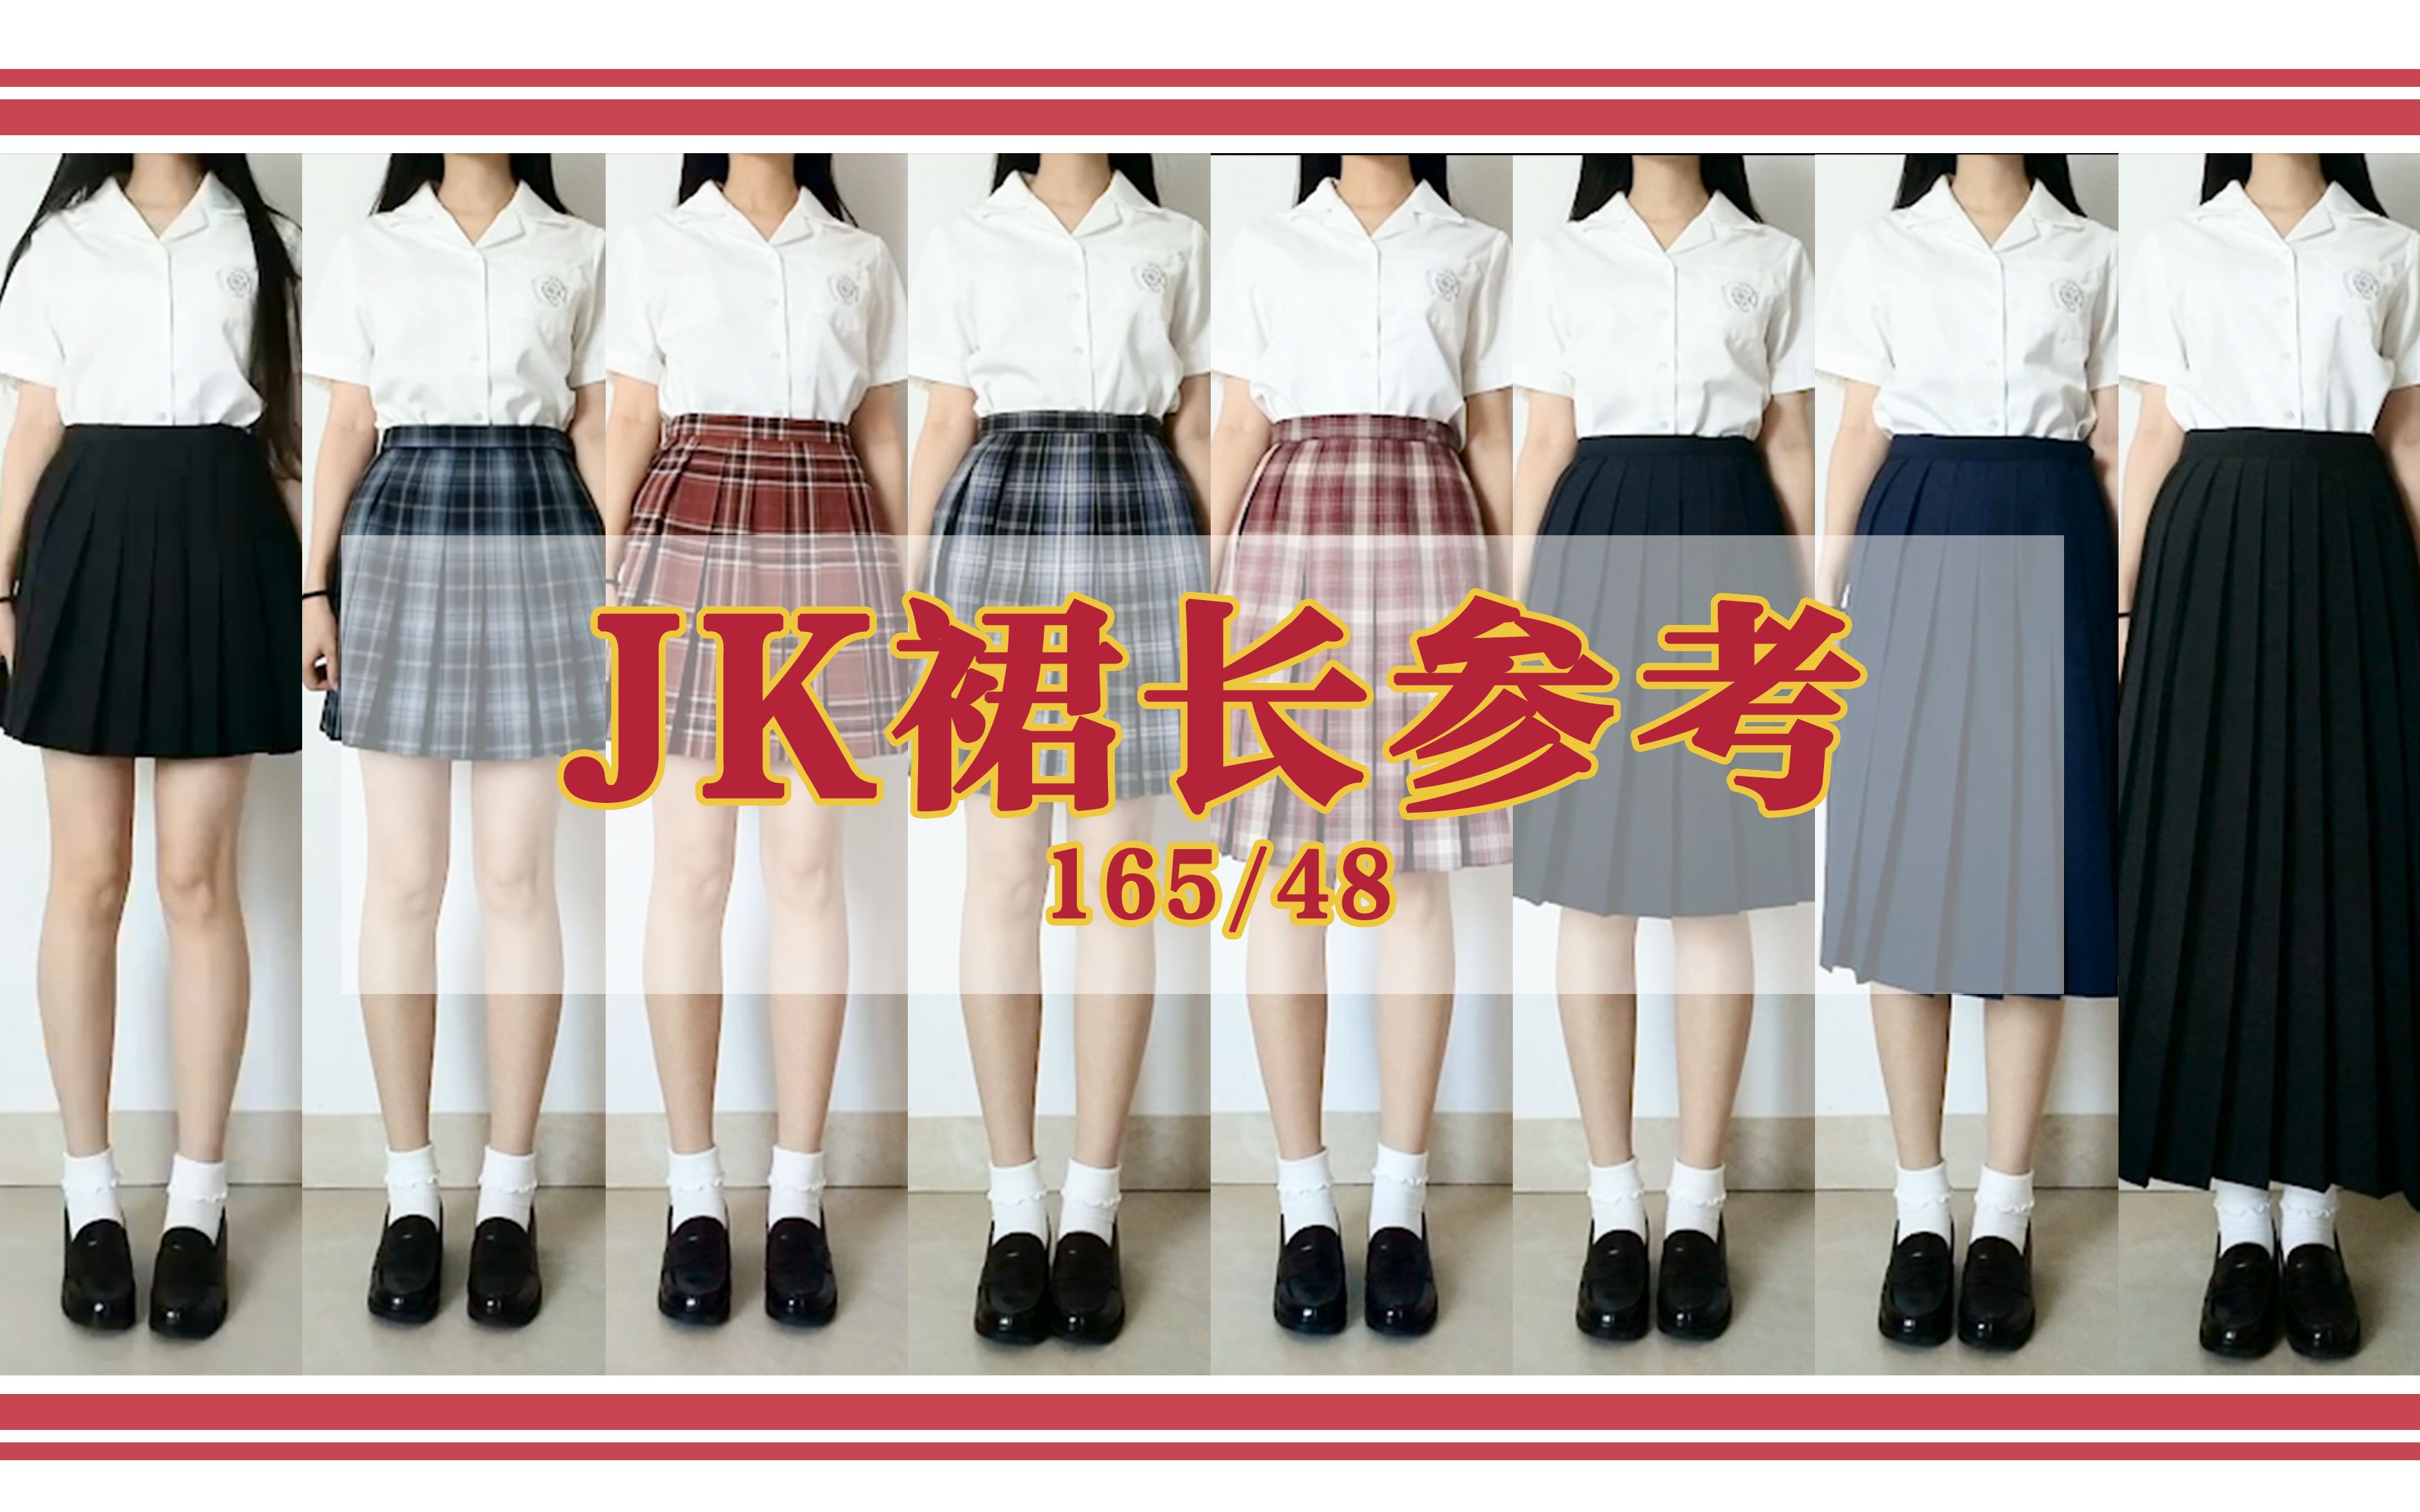 jk裙长身高示意图158图片